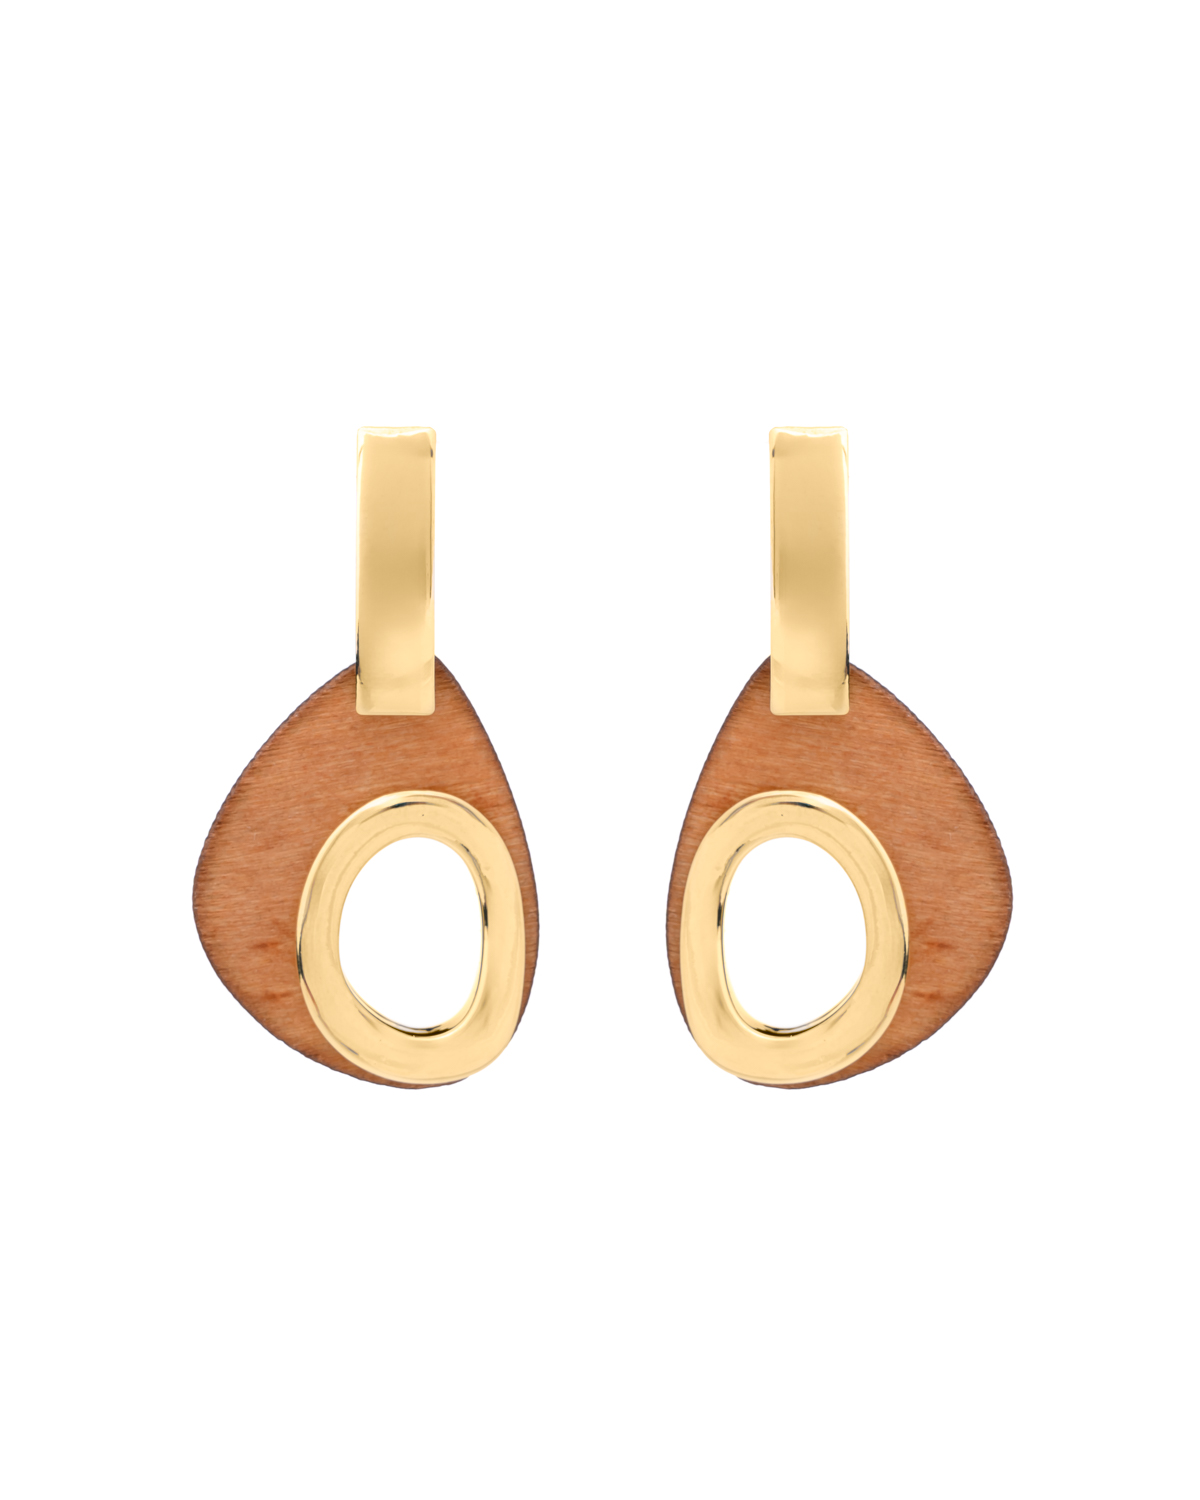 Wood and Metal earrings